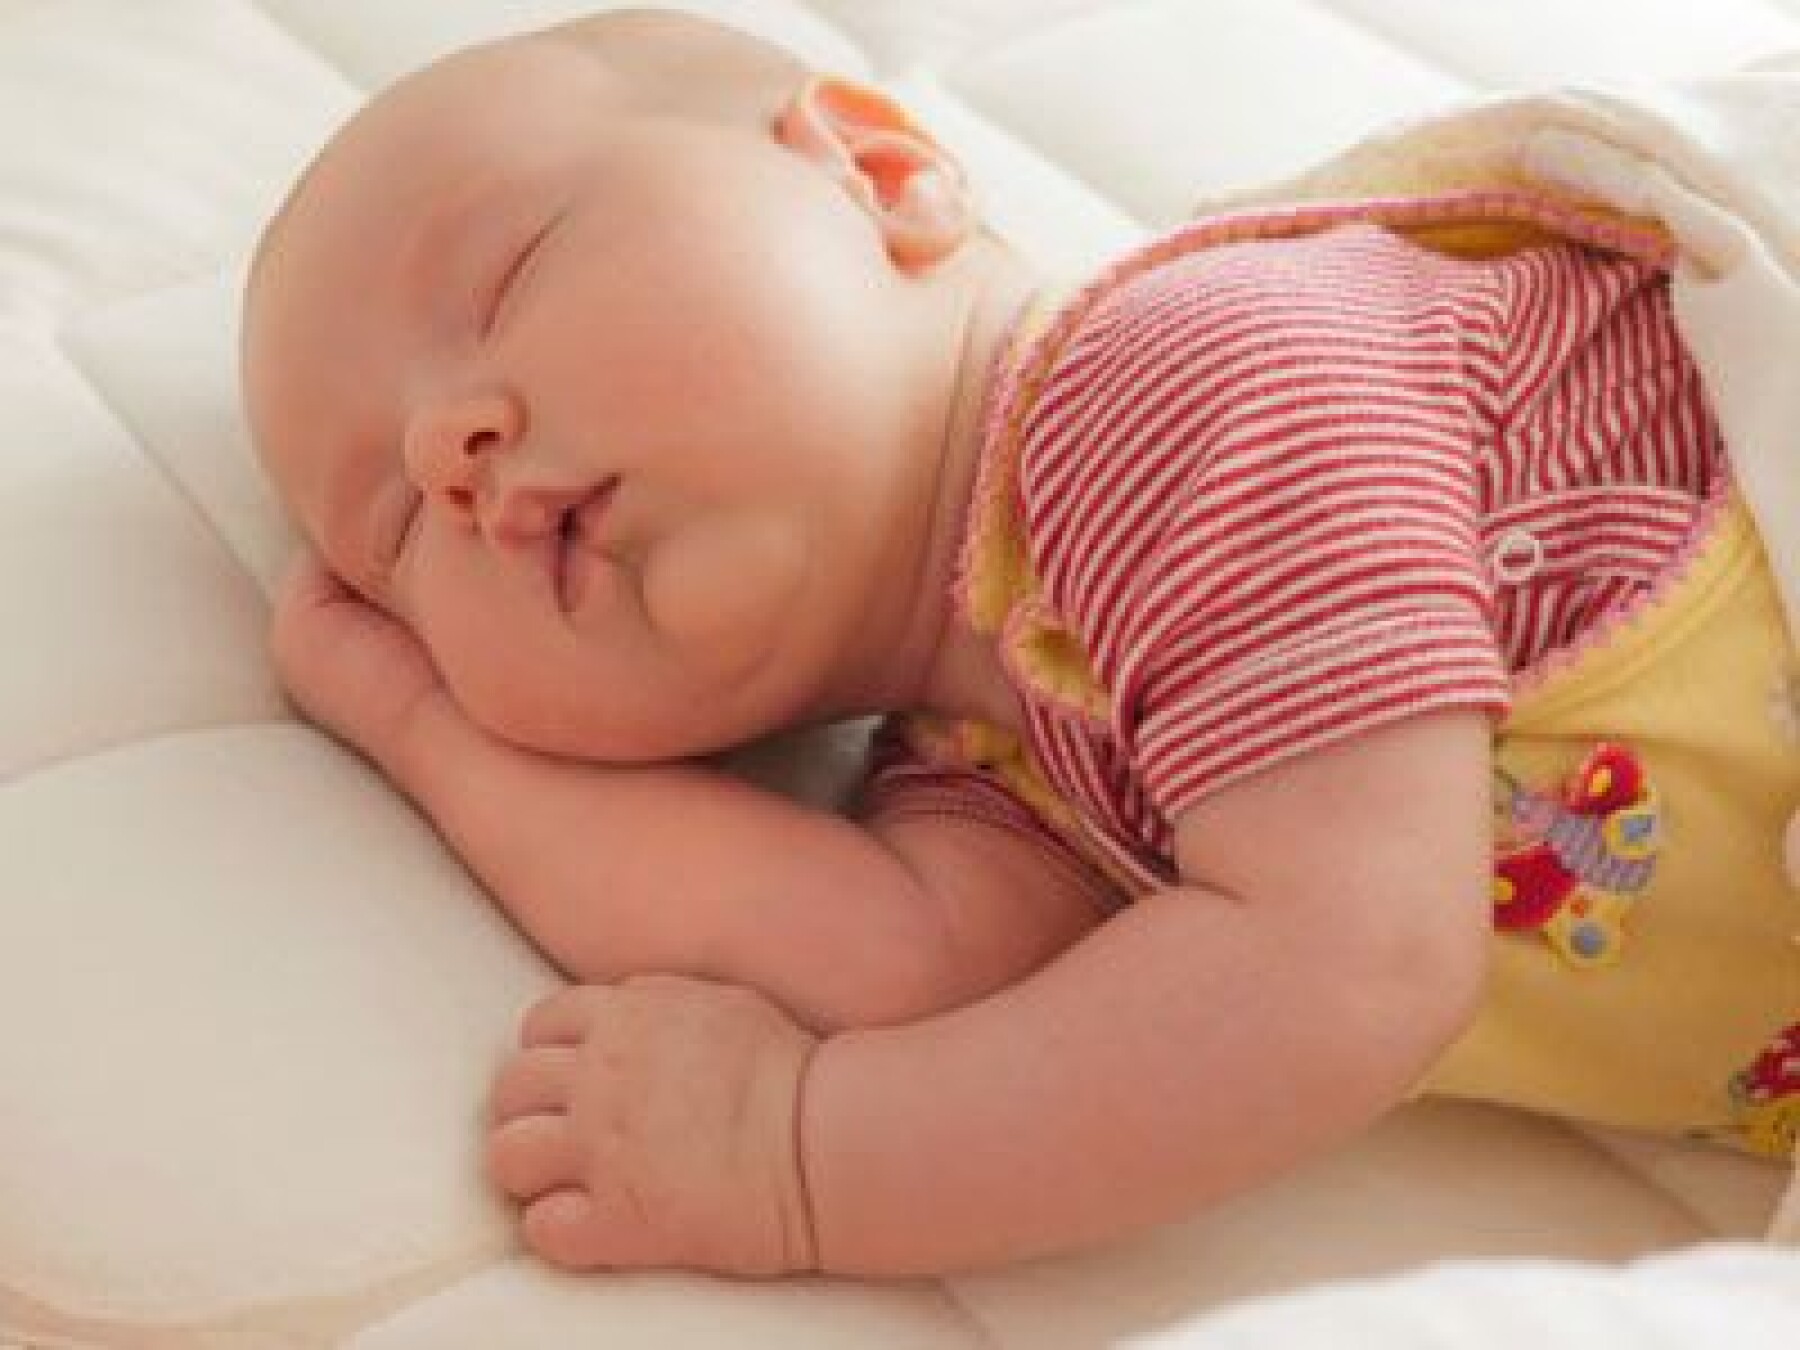 Moustiques : comment protéger les bébés ?